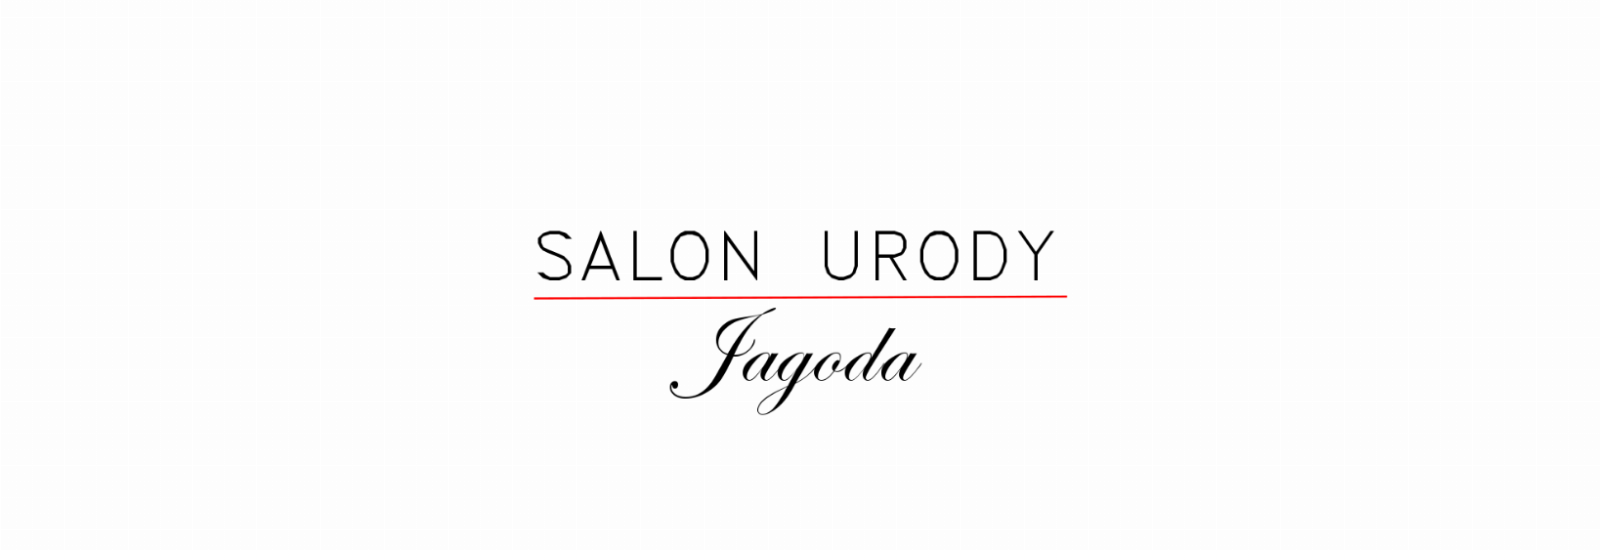 Salon Urody Jagoda, Karczew, projekt-bez-tytulu-6